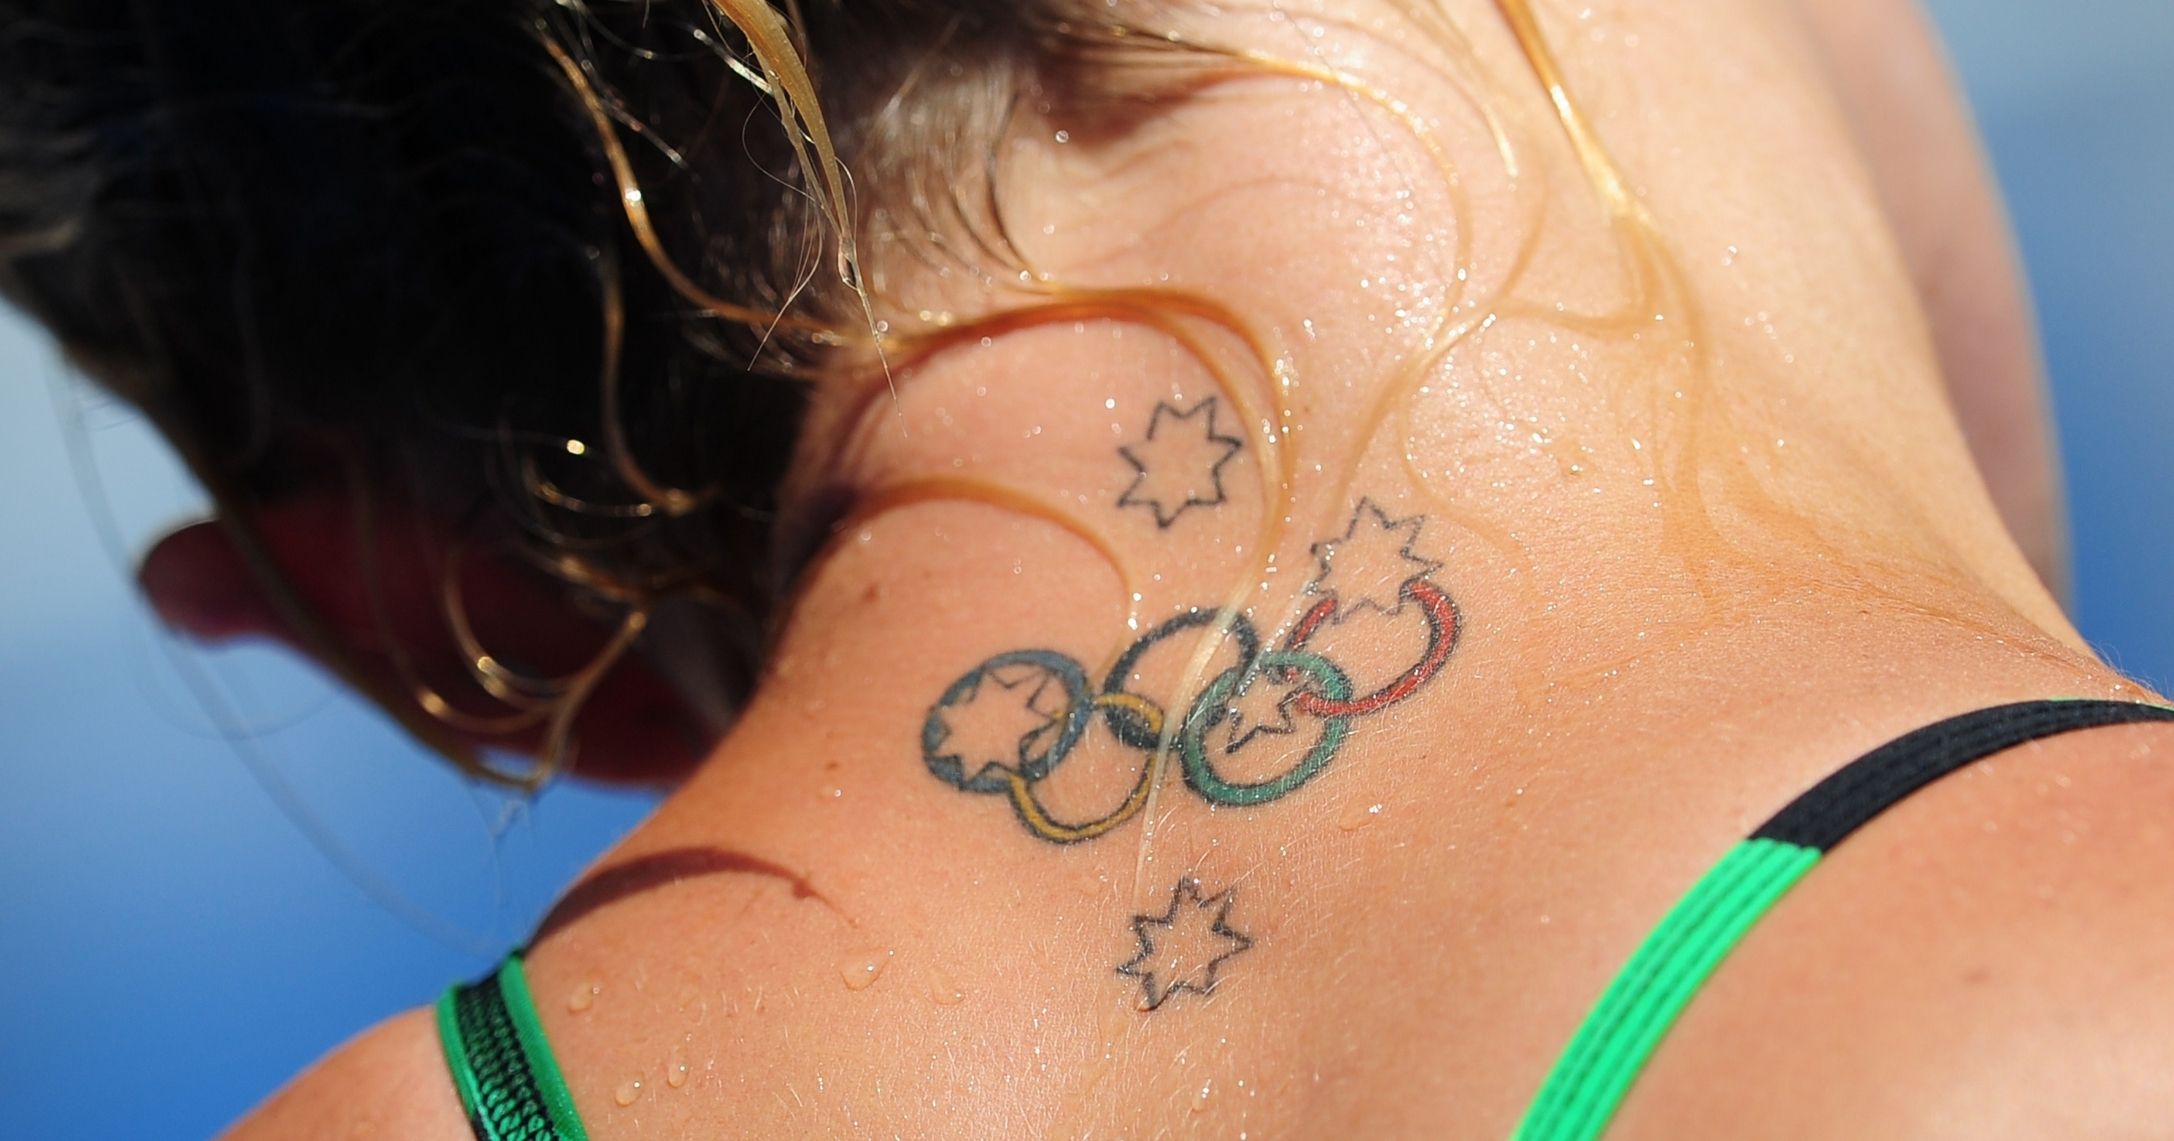 InkBox Tattoo Studio - Olympic Rings 🥇 #tattoo #ink #tattoodesign  #tattooart #inked #tattooed #inking #tattoostudio #tattoocyprus  #cyprustattoo #cyprustattoostudio #cyprustattooartists #tattoocy #cytattoo  #cyprusink #inkboxlarnaca #inkboxcyprus ...